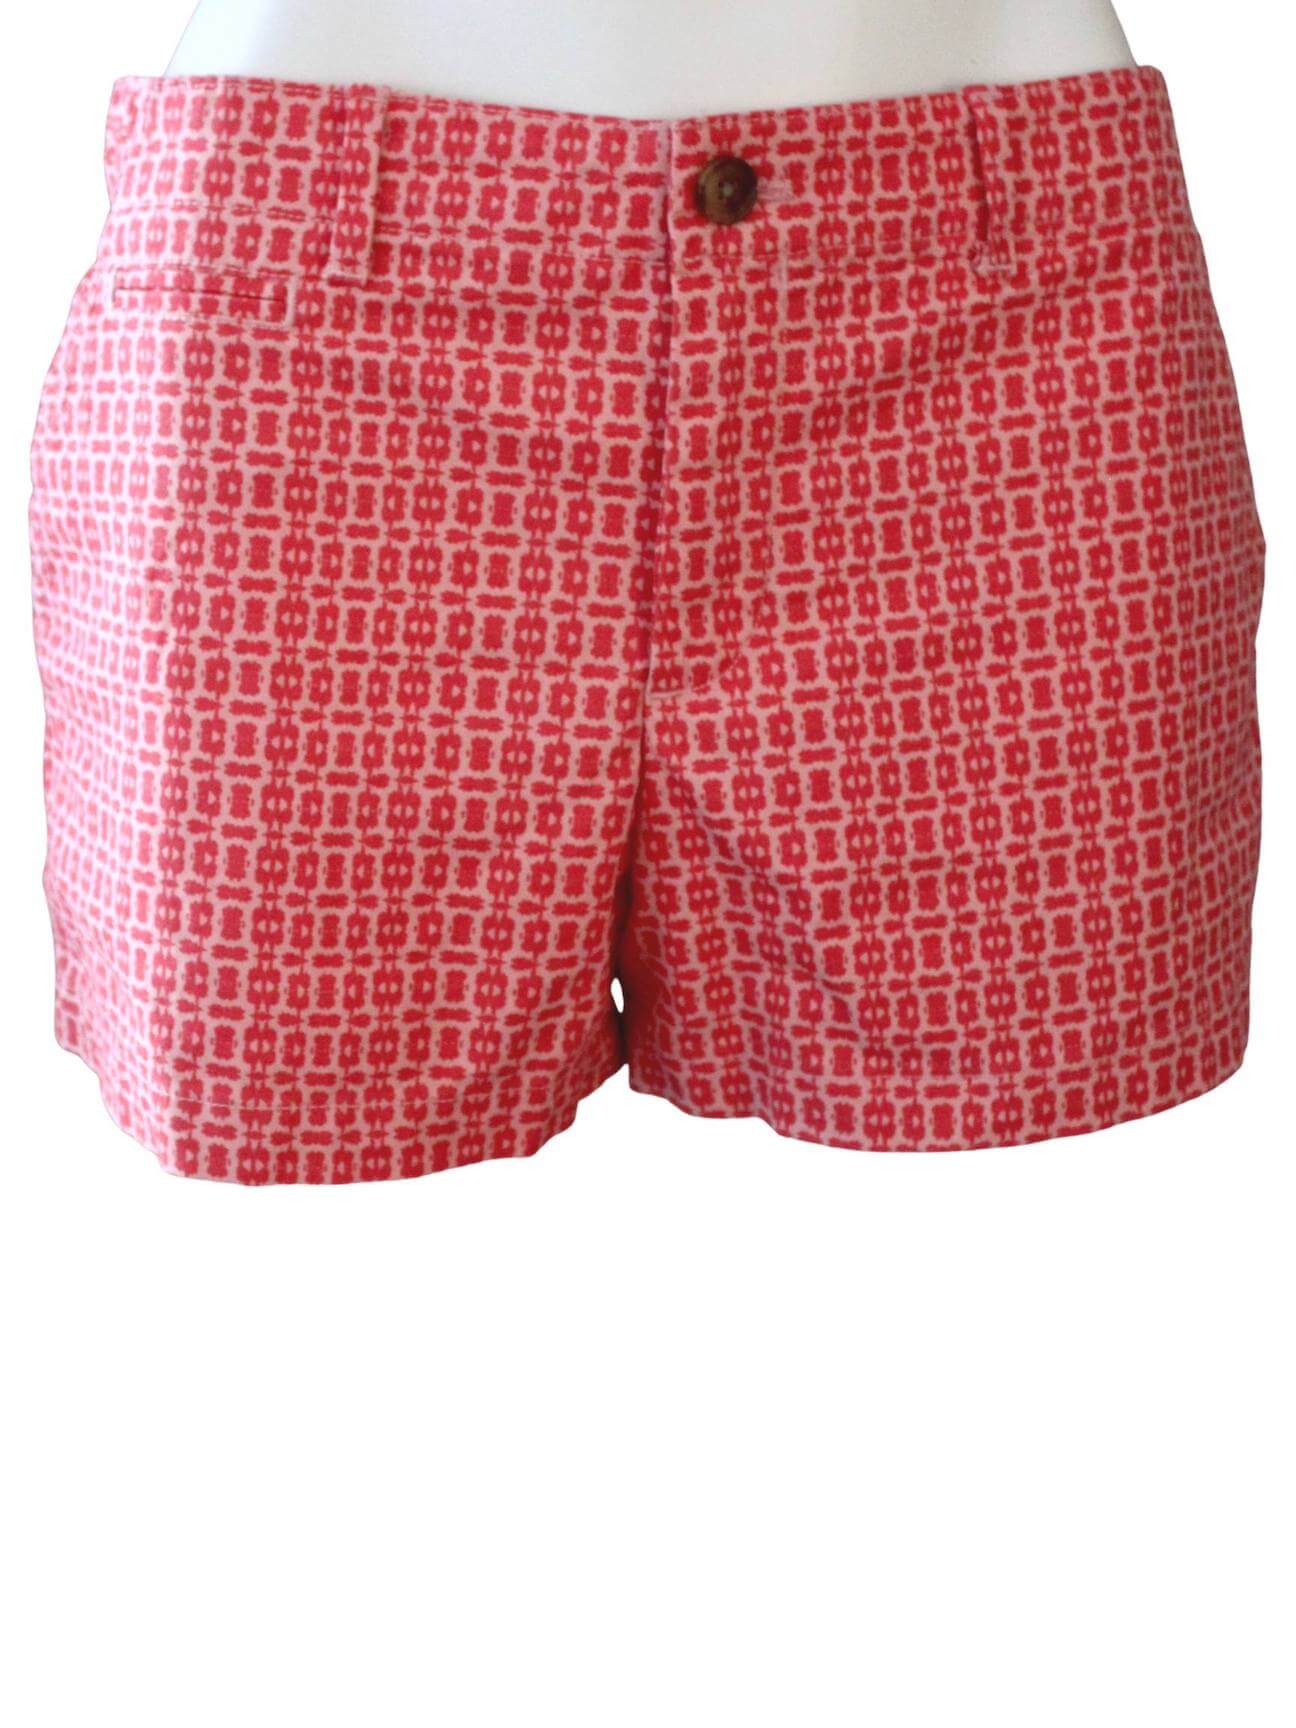 Warm Spring GAP pink and orange laser print shorts